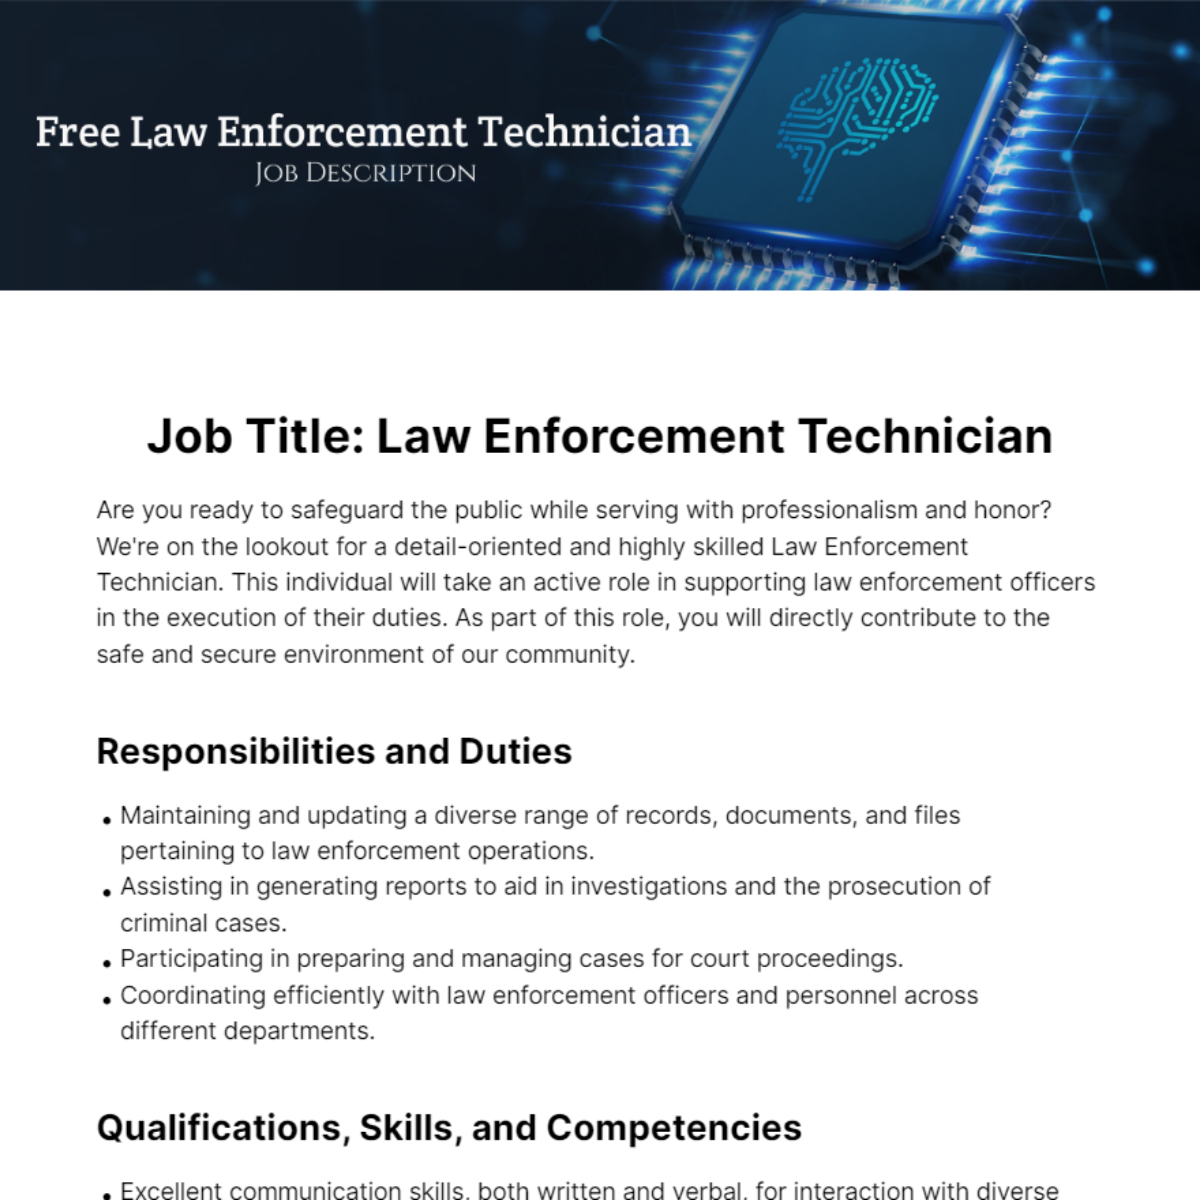 Free Law Enforcement Technician Job Description Template